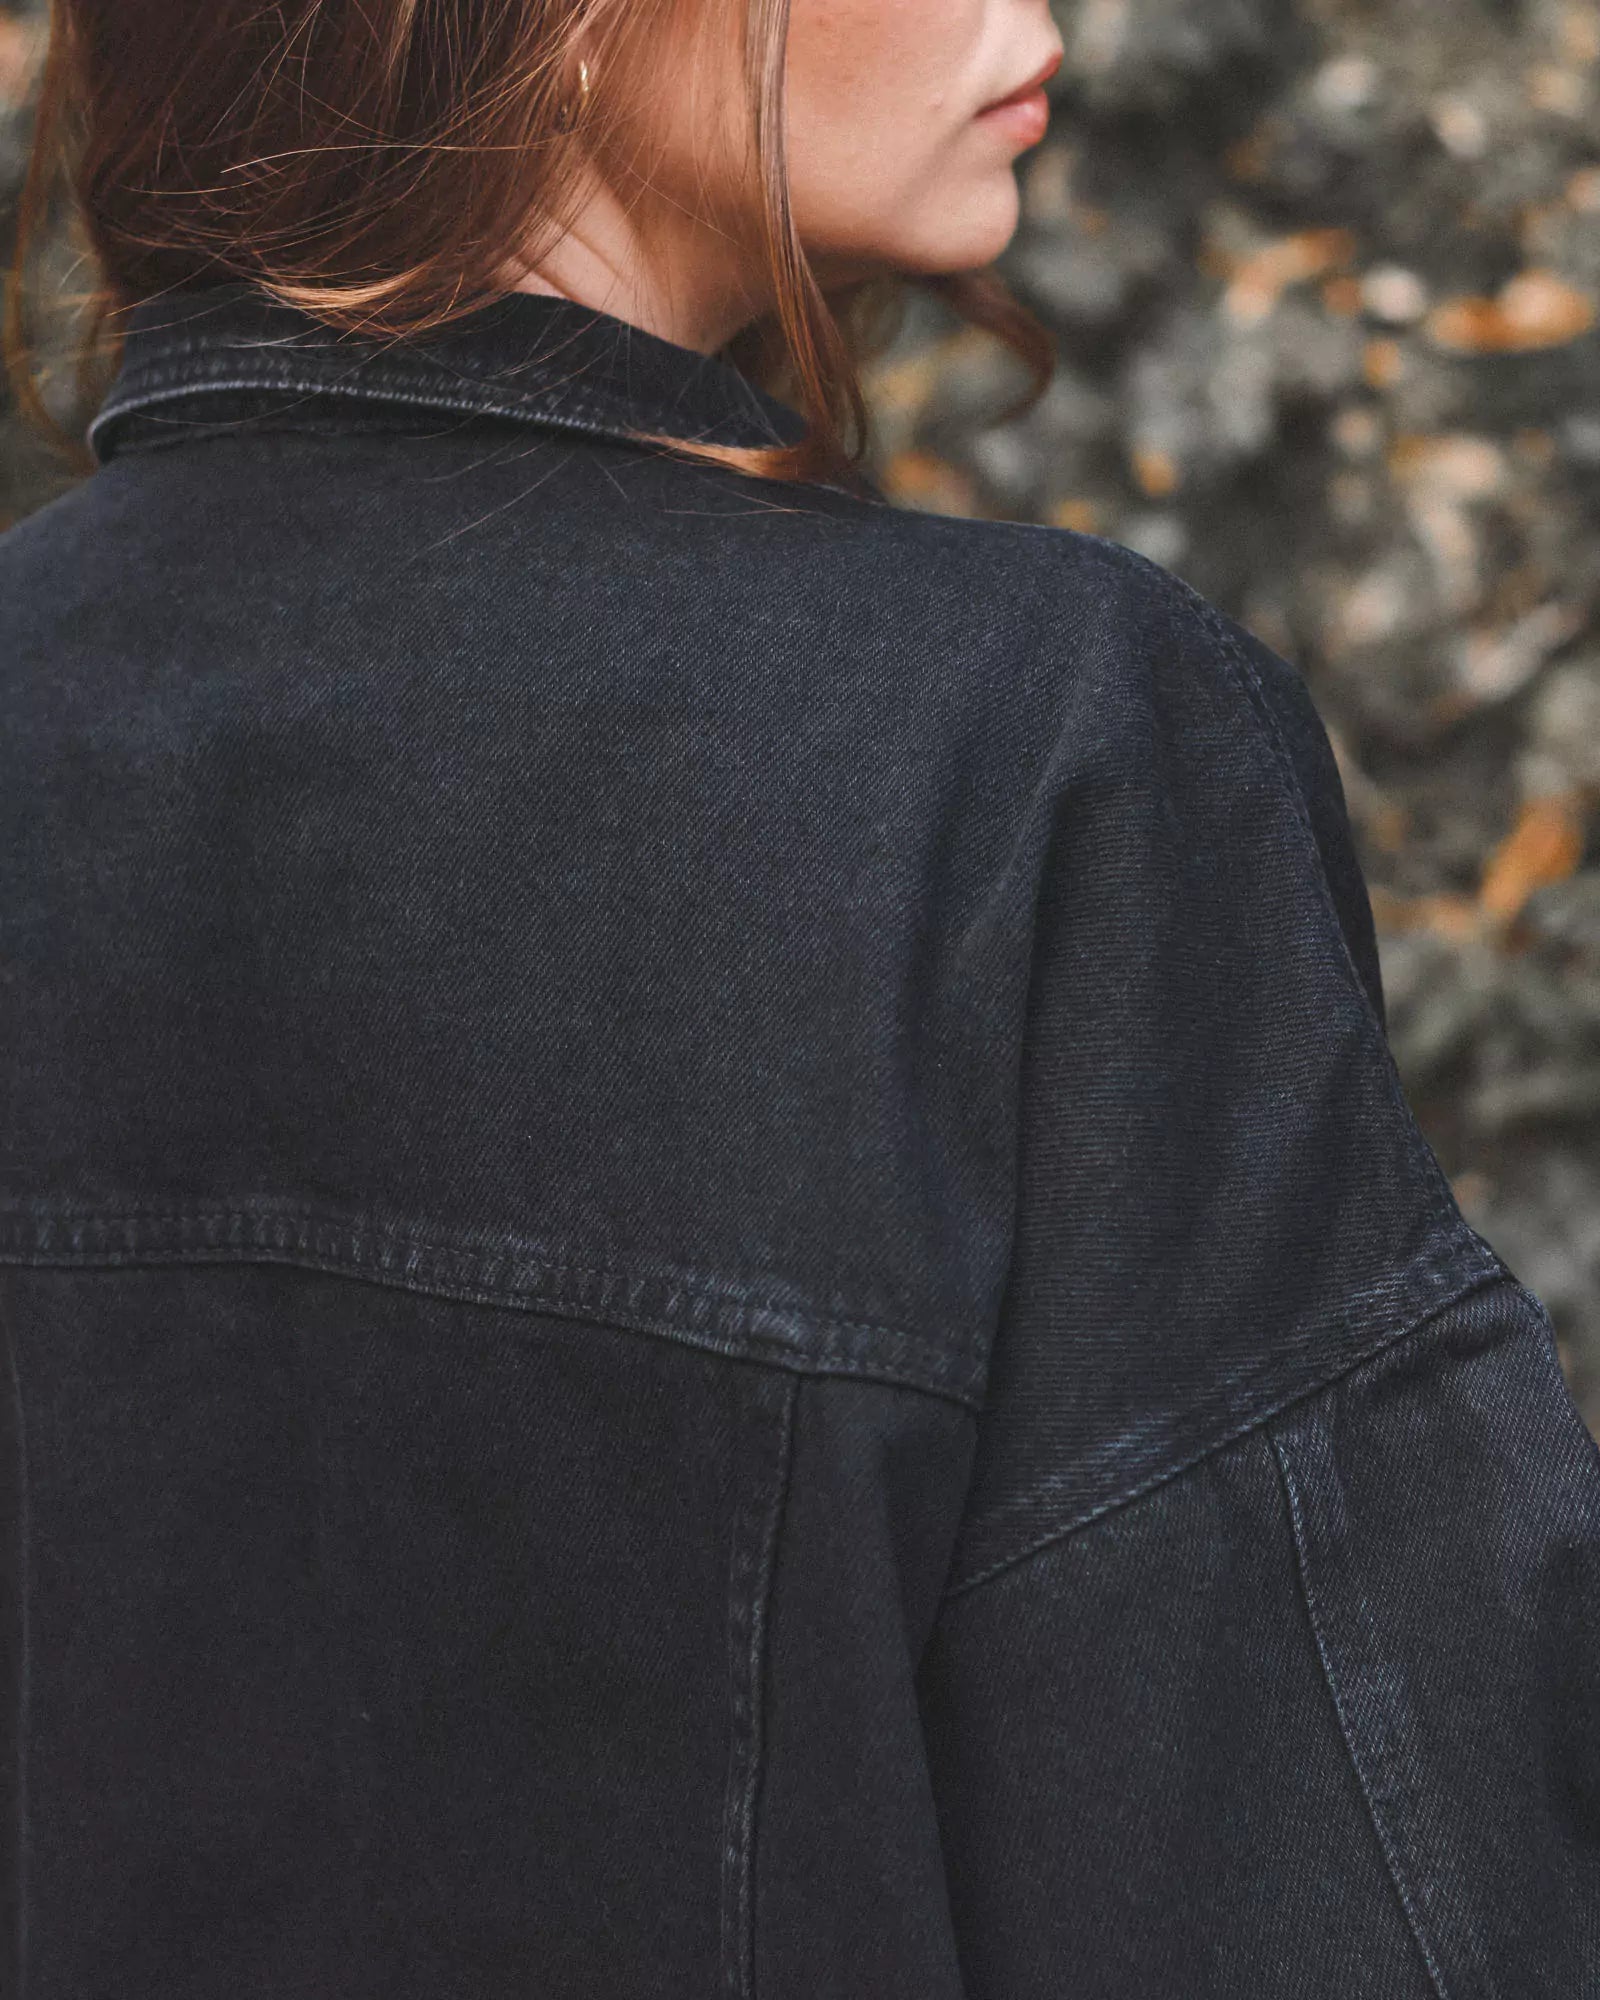 Jaqueta Jeans Oversized Preta Eco Denim™. Compre online moda sustentável e atemporal na Minimadeia. Roupas femininas estilosas, básicas e sustentáveis. Foto produto 04